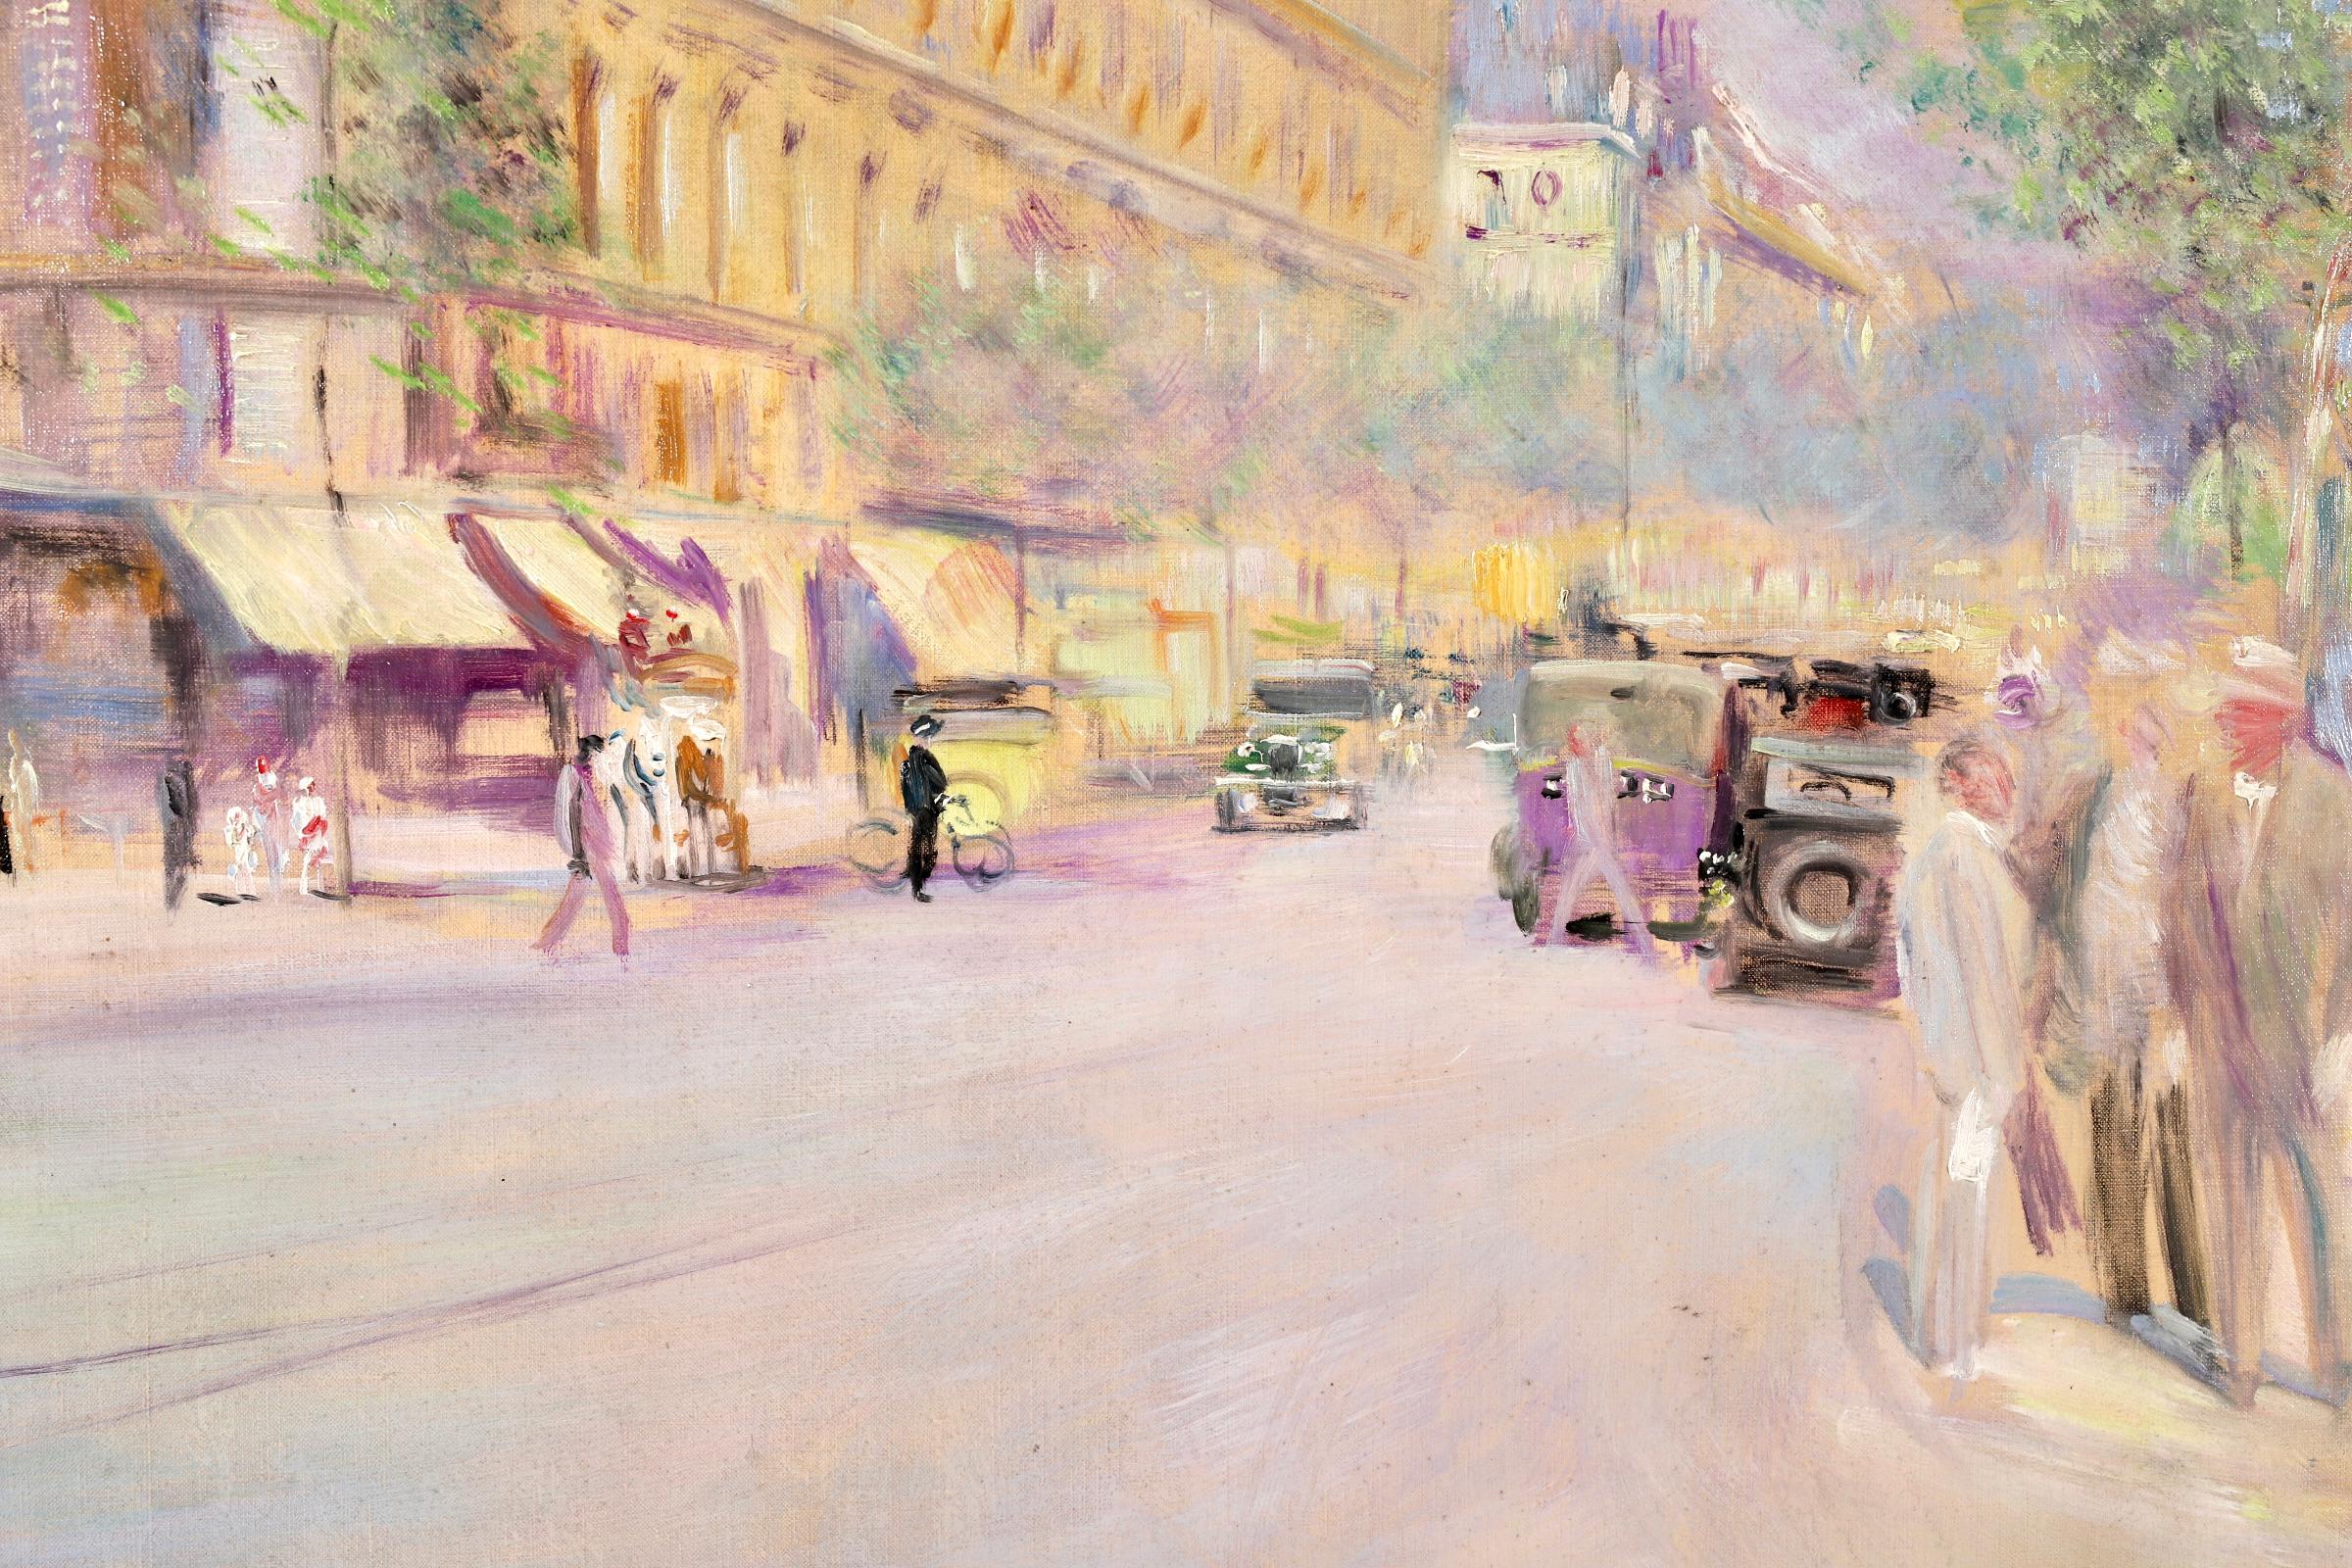 Boulevard Saint-Michel - Paris - Post Impressionist Oil, Cityscape by L Adrion 2